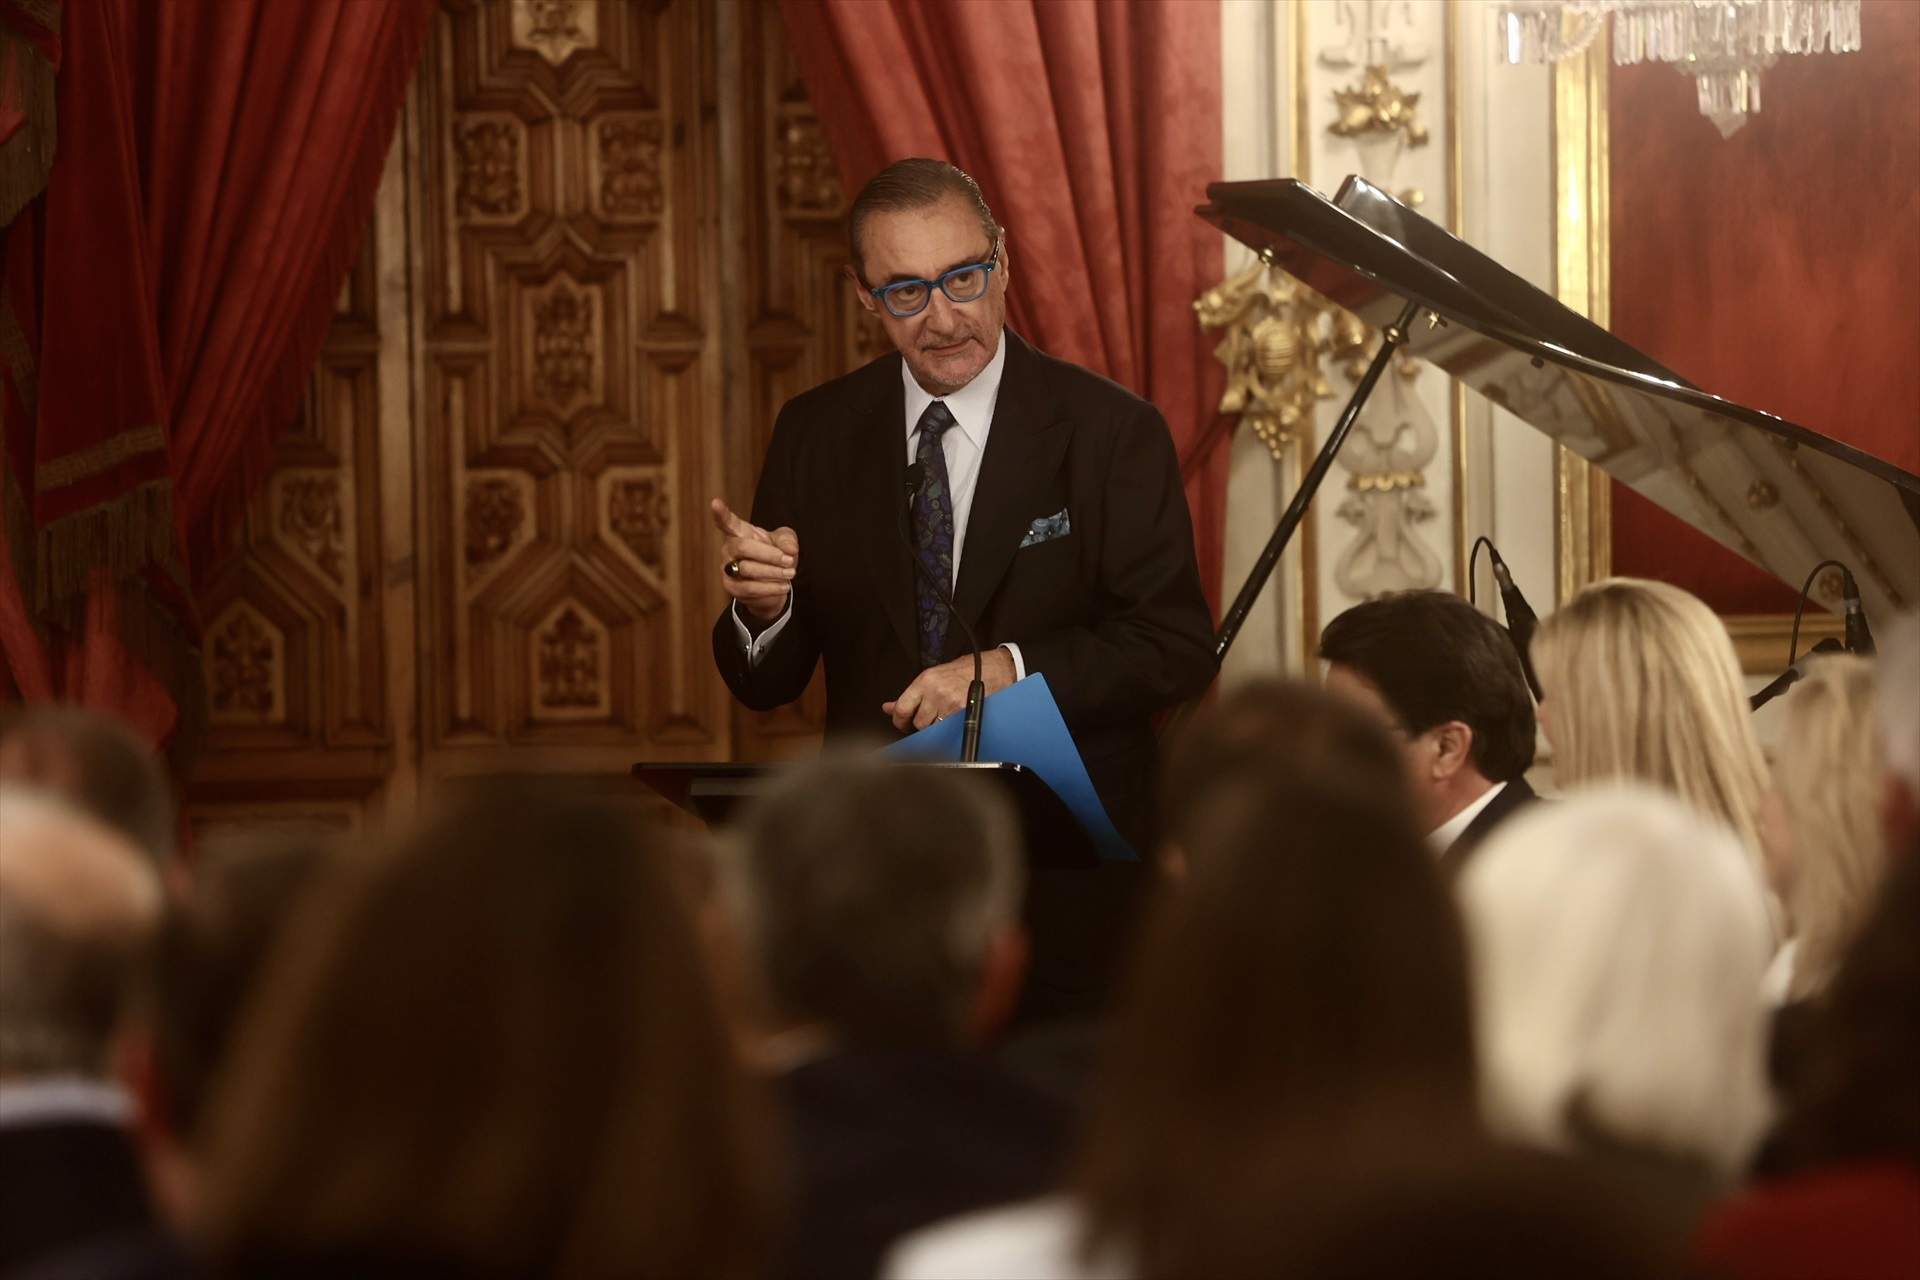 El periodista Carlos Herrera reconfirma su candidatura a la presidencia de la RFEF